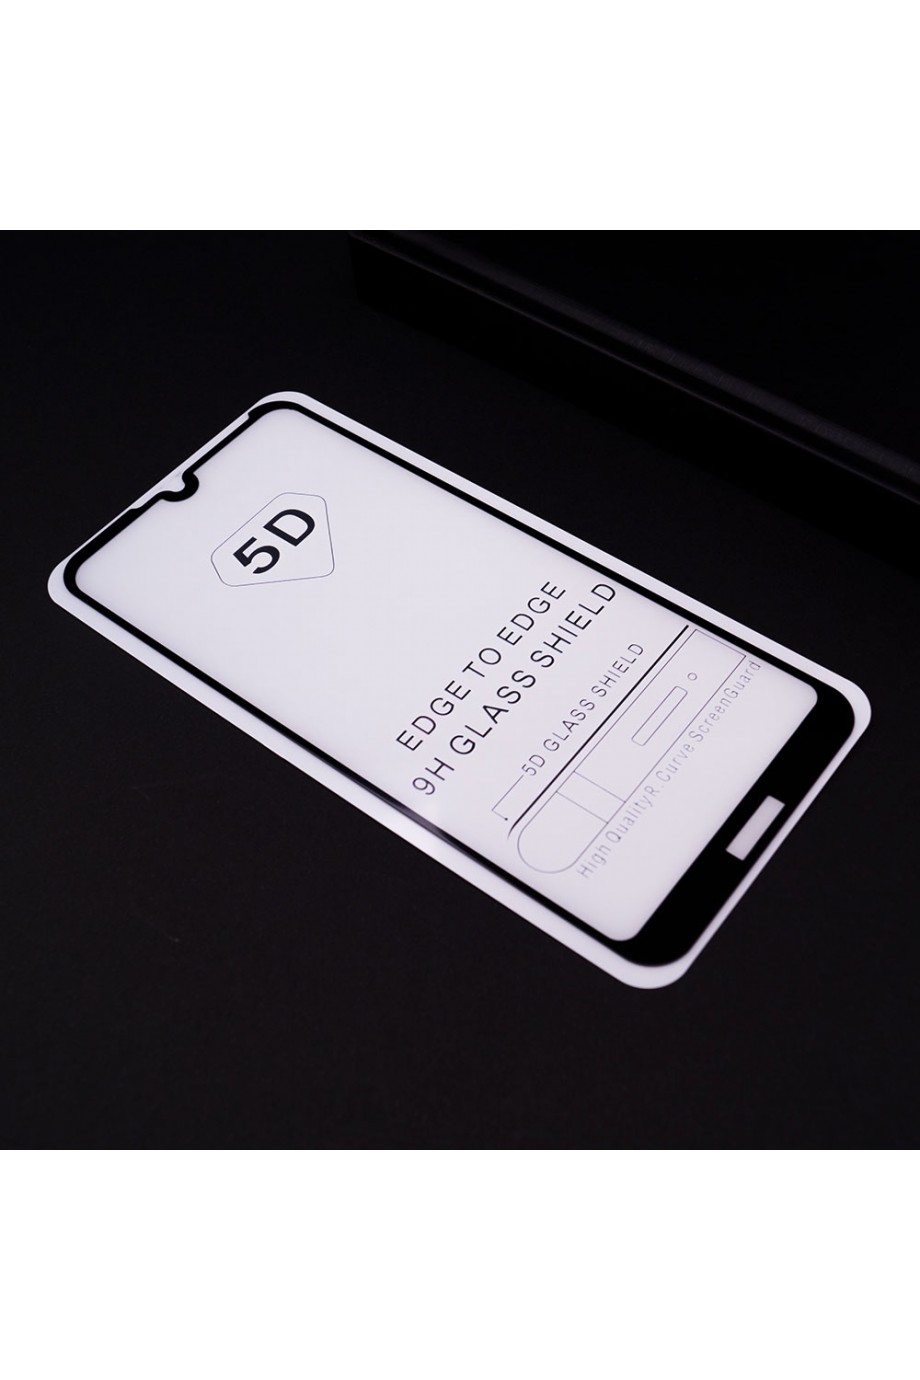 Защитное стекло 5D Mikomo для Honor 8A, черная рамка, полный клей